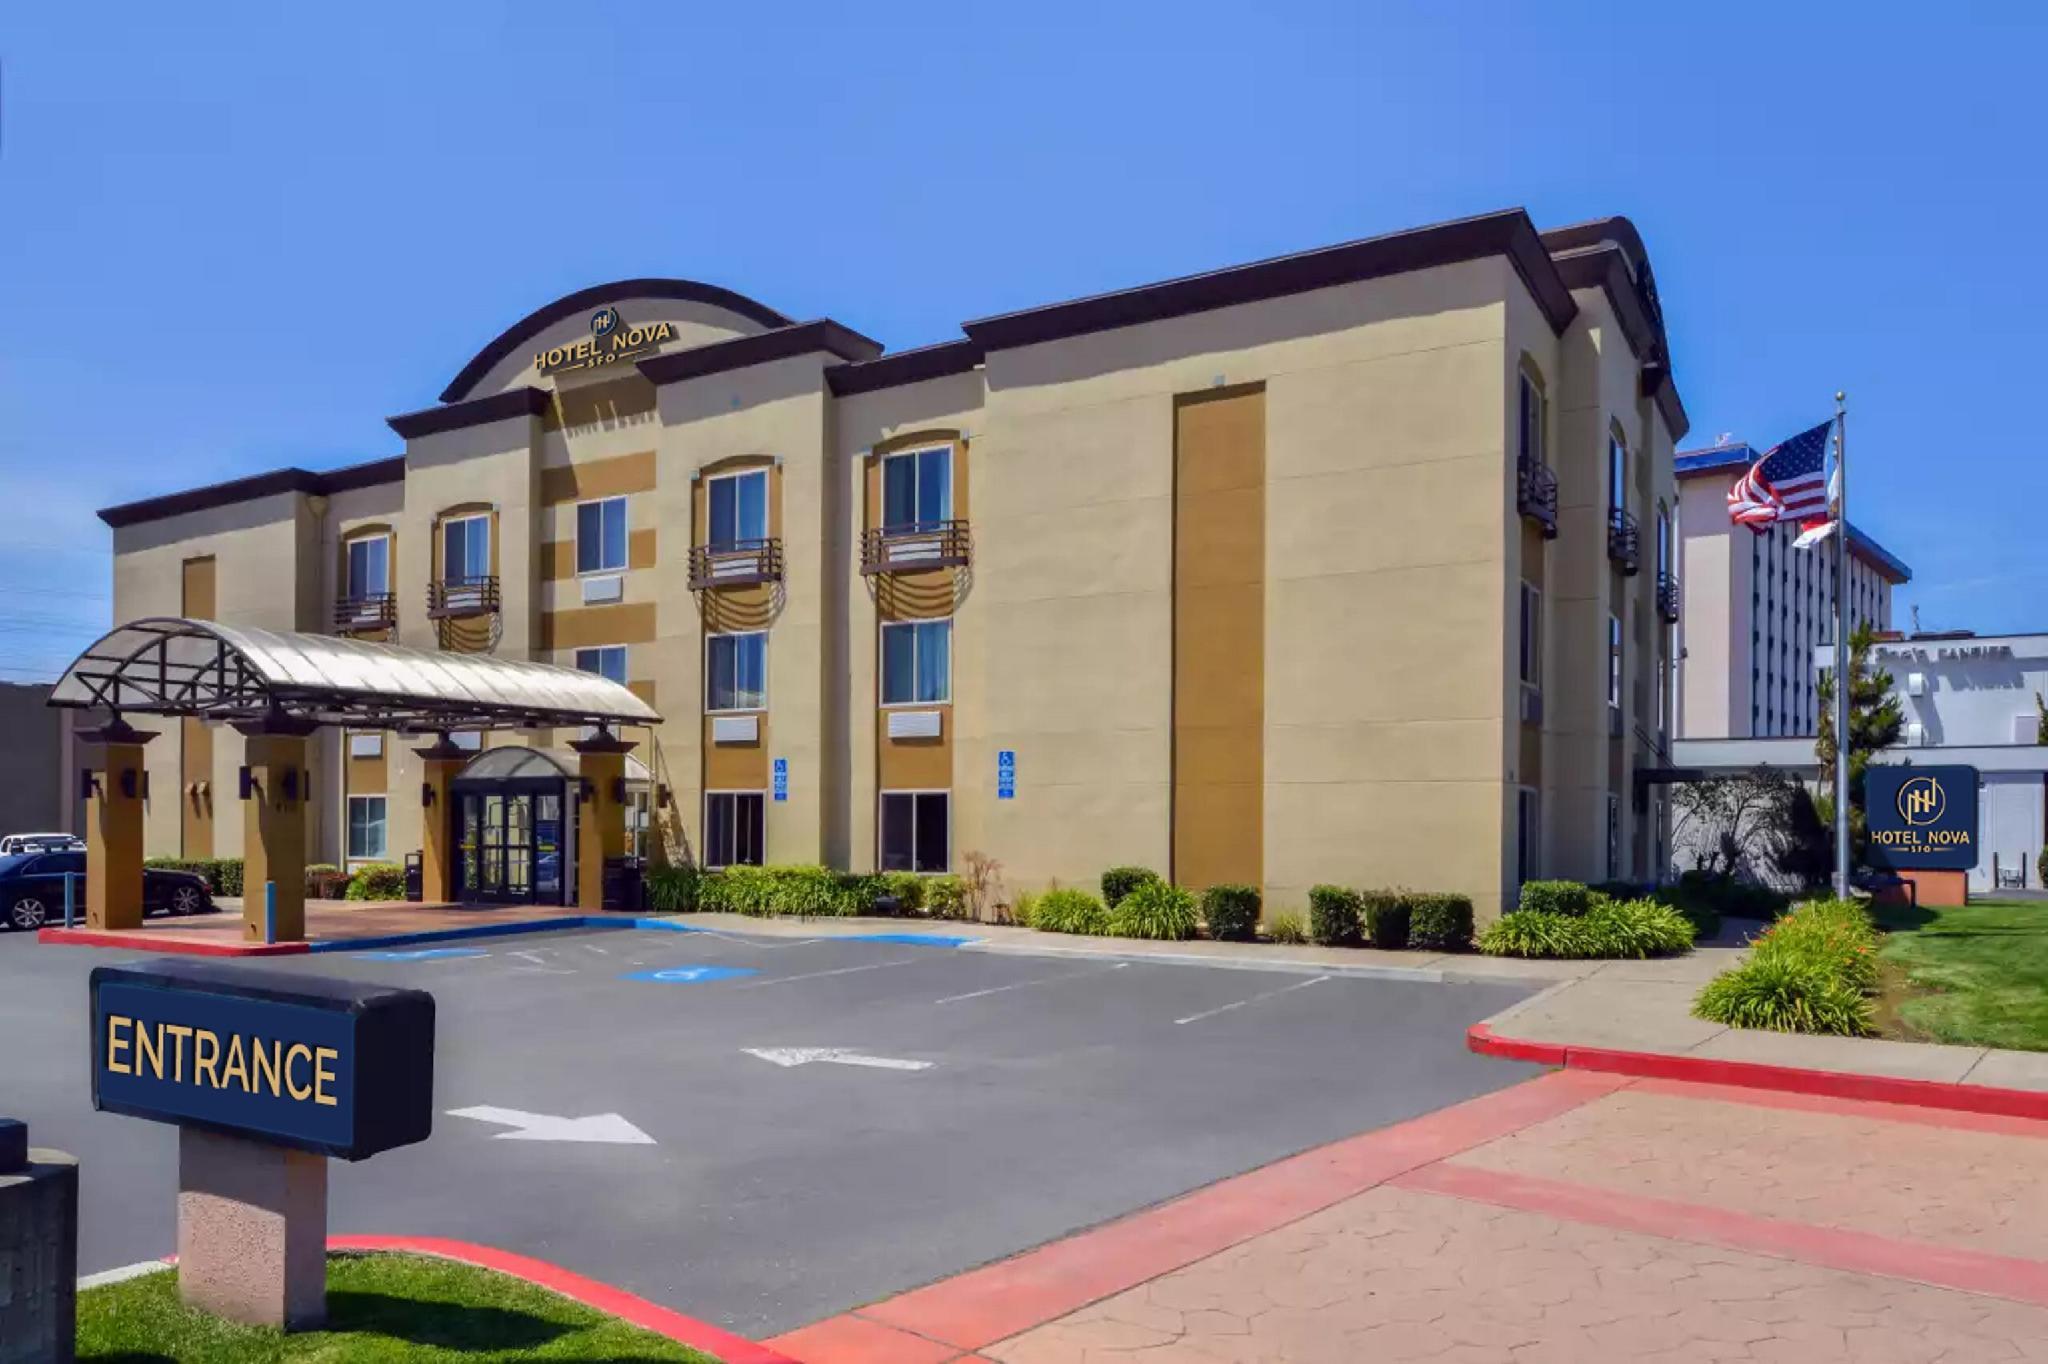 Hotel Nova Sfo - A Fairbridge Hotel - Pacifica, CA